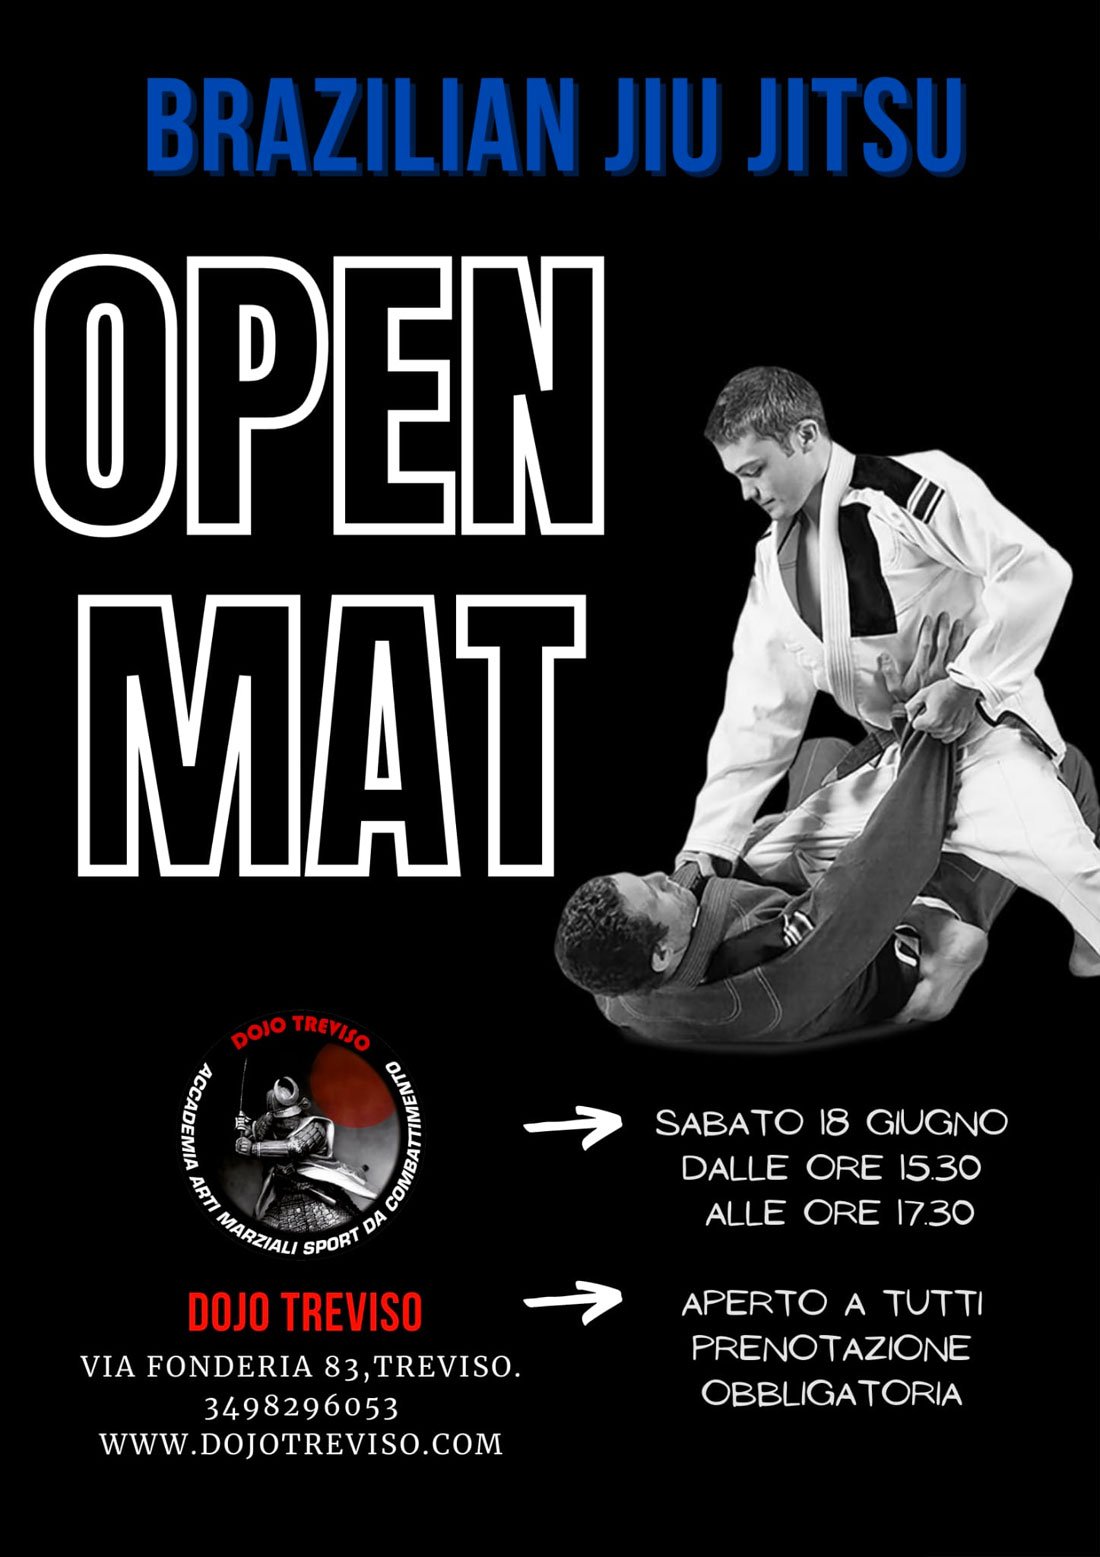 Brazilian Jiu Jitsu Open Mat